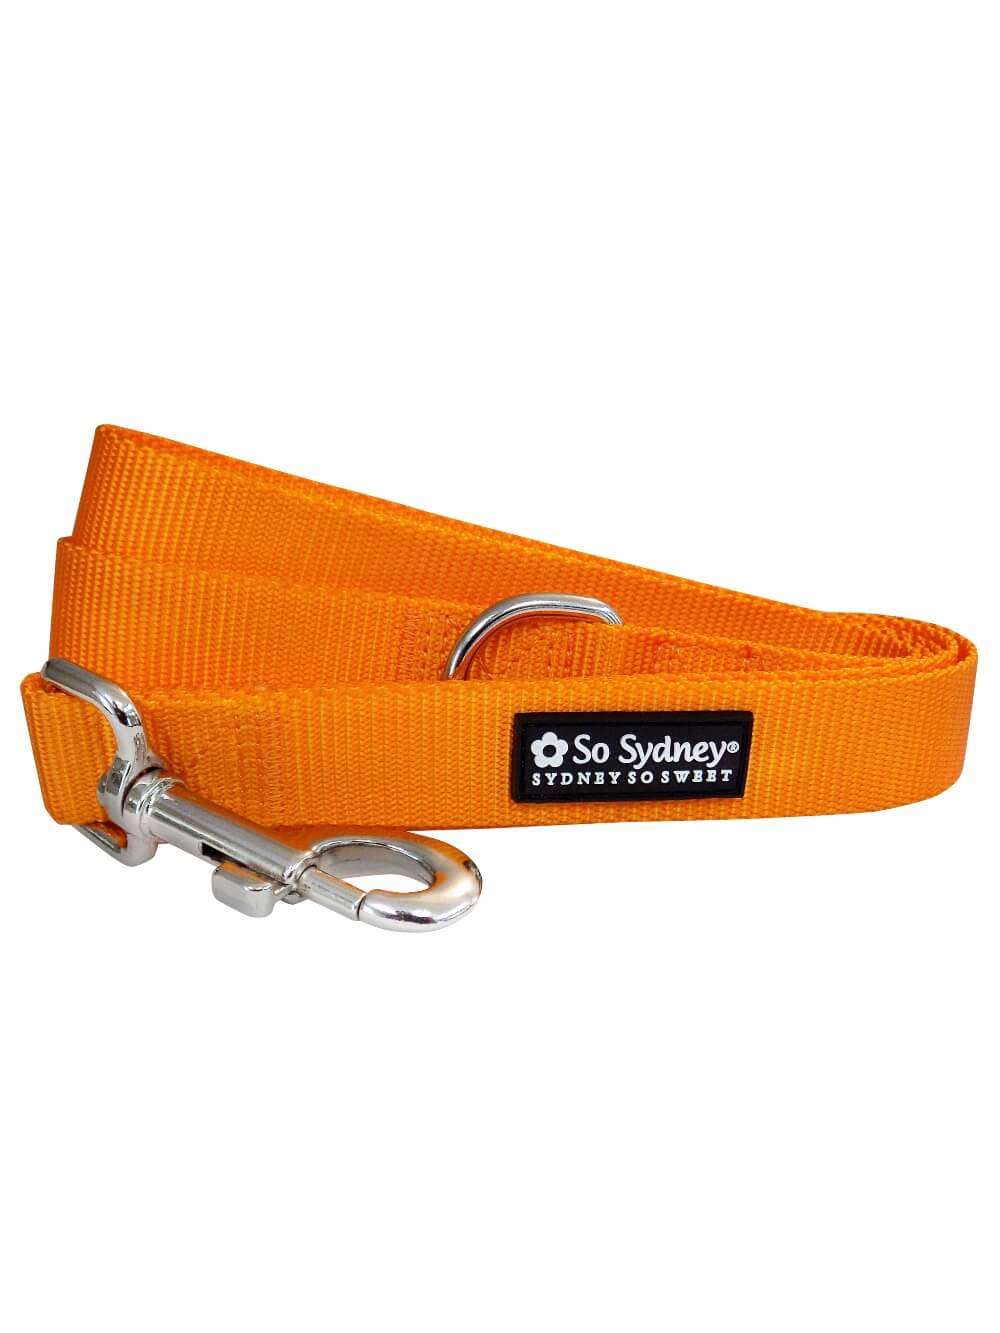 Orange Nylon Dog Leash for Small, Medium, or Large Dogs - Sydney So Sweet